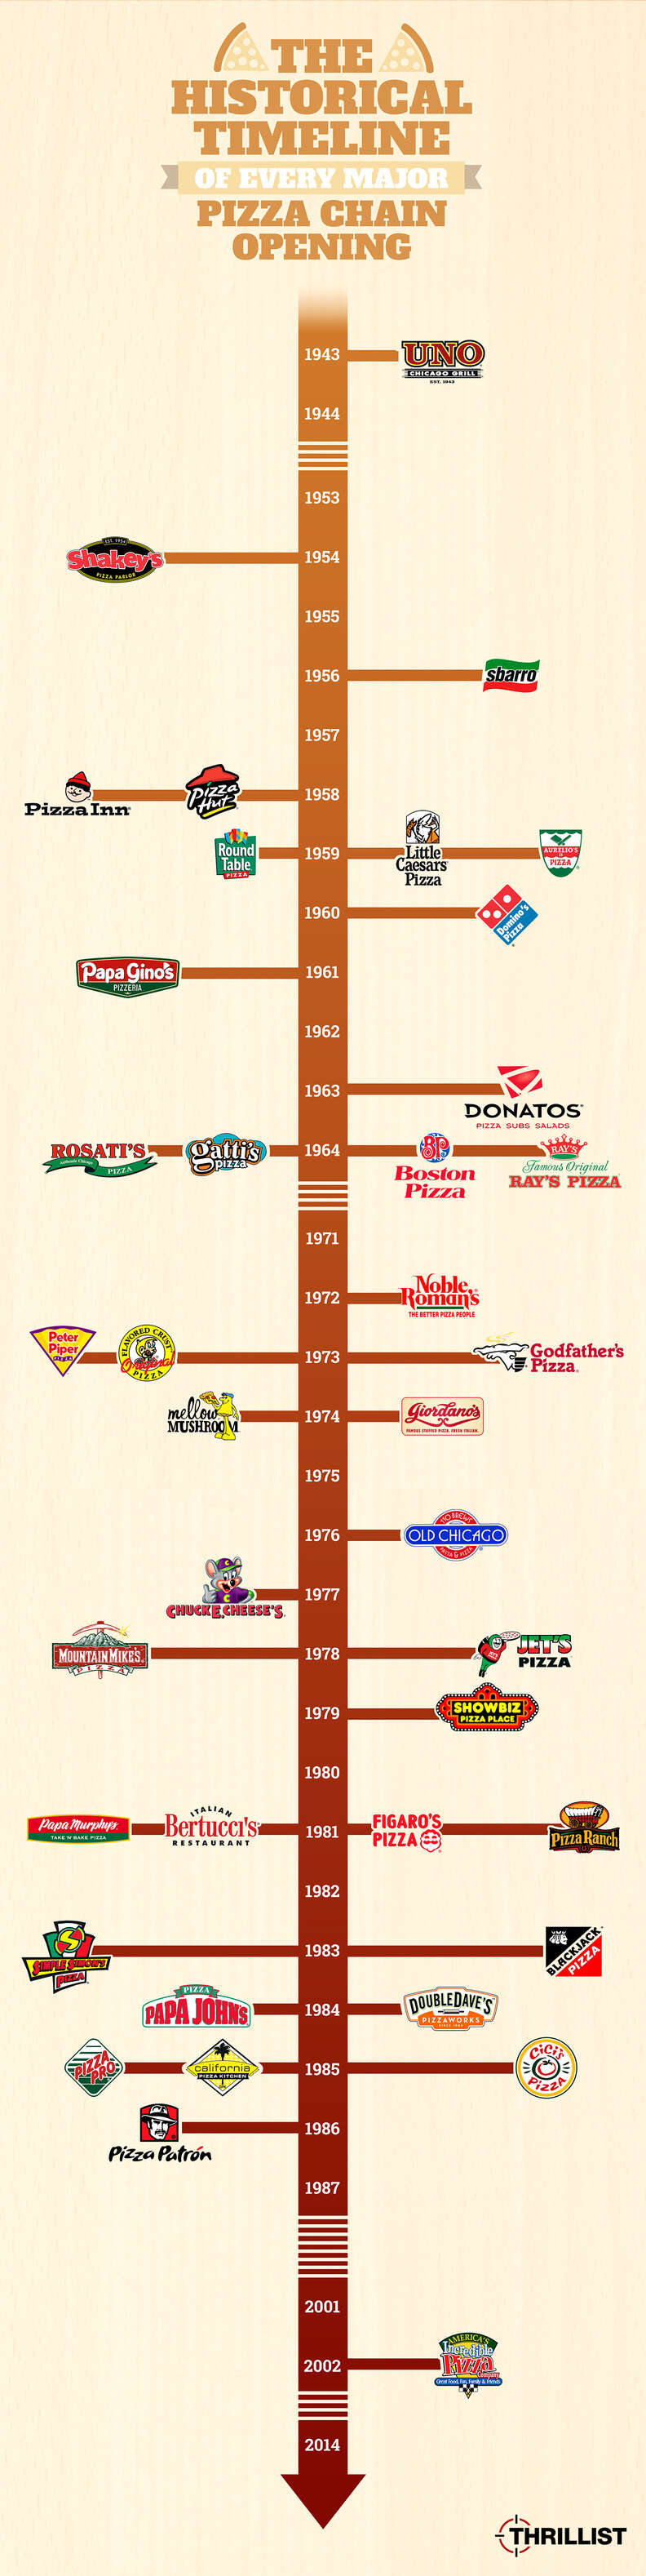 Thrillist pizza chain timeline